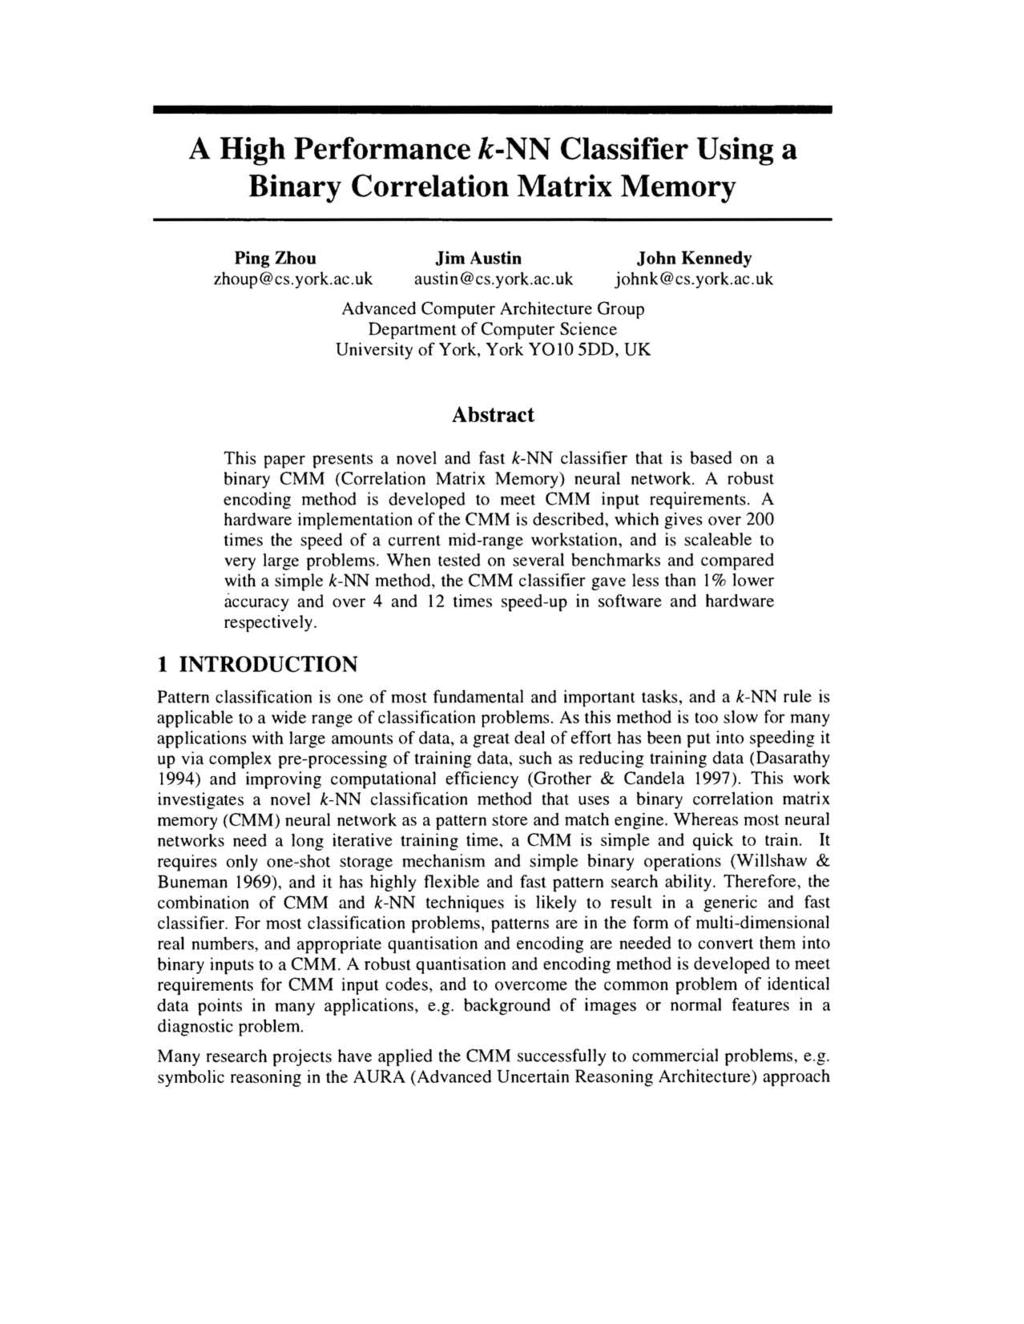 A High Performance k-nn Classifier Using a Binary Correlation Matrix Memory Ping Zhou zhoup@cs.york.ac.